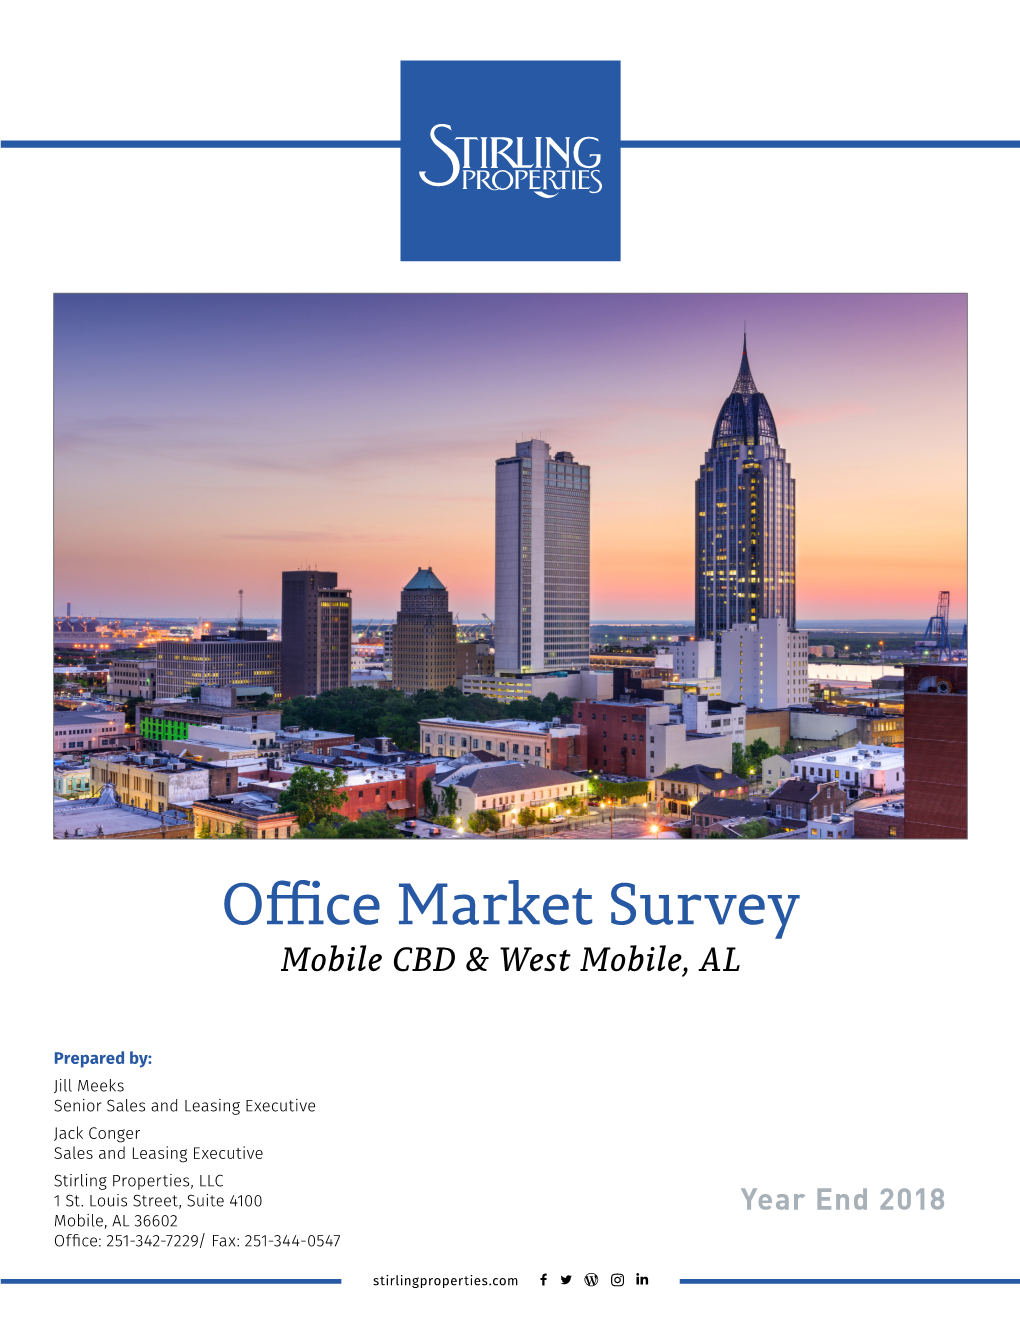 Office Market Survey Mobile CBD & West Mobile, AL